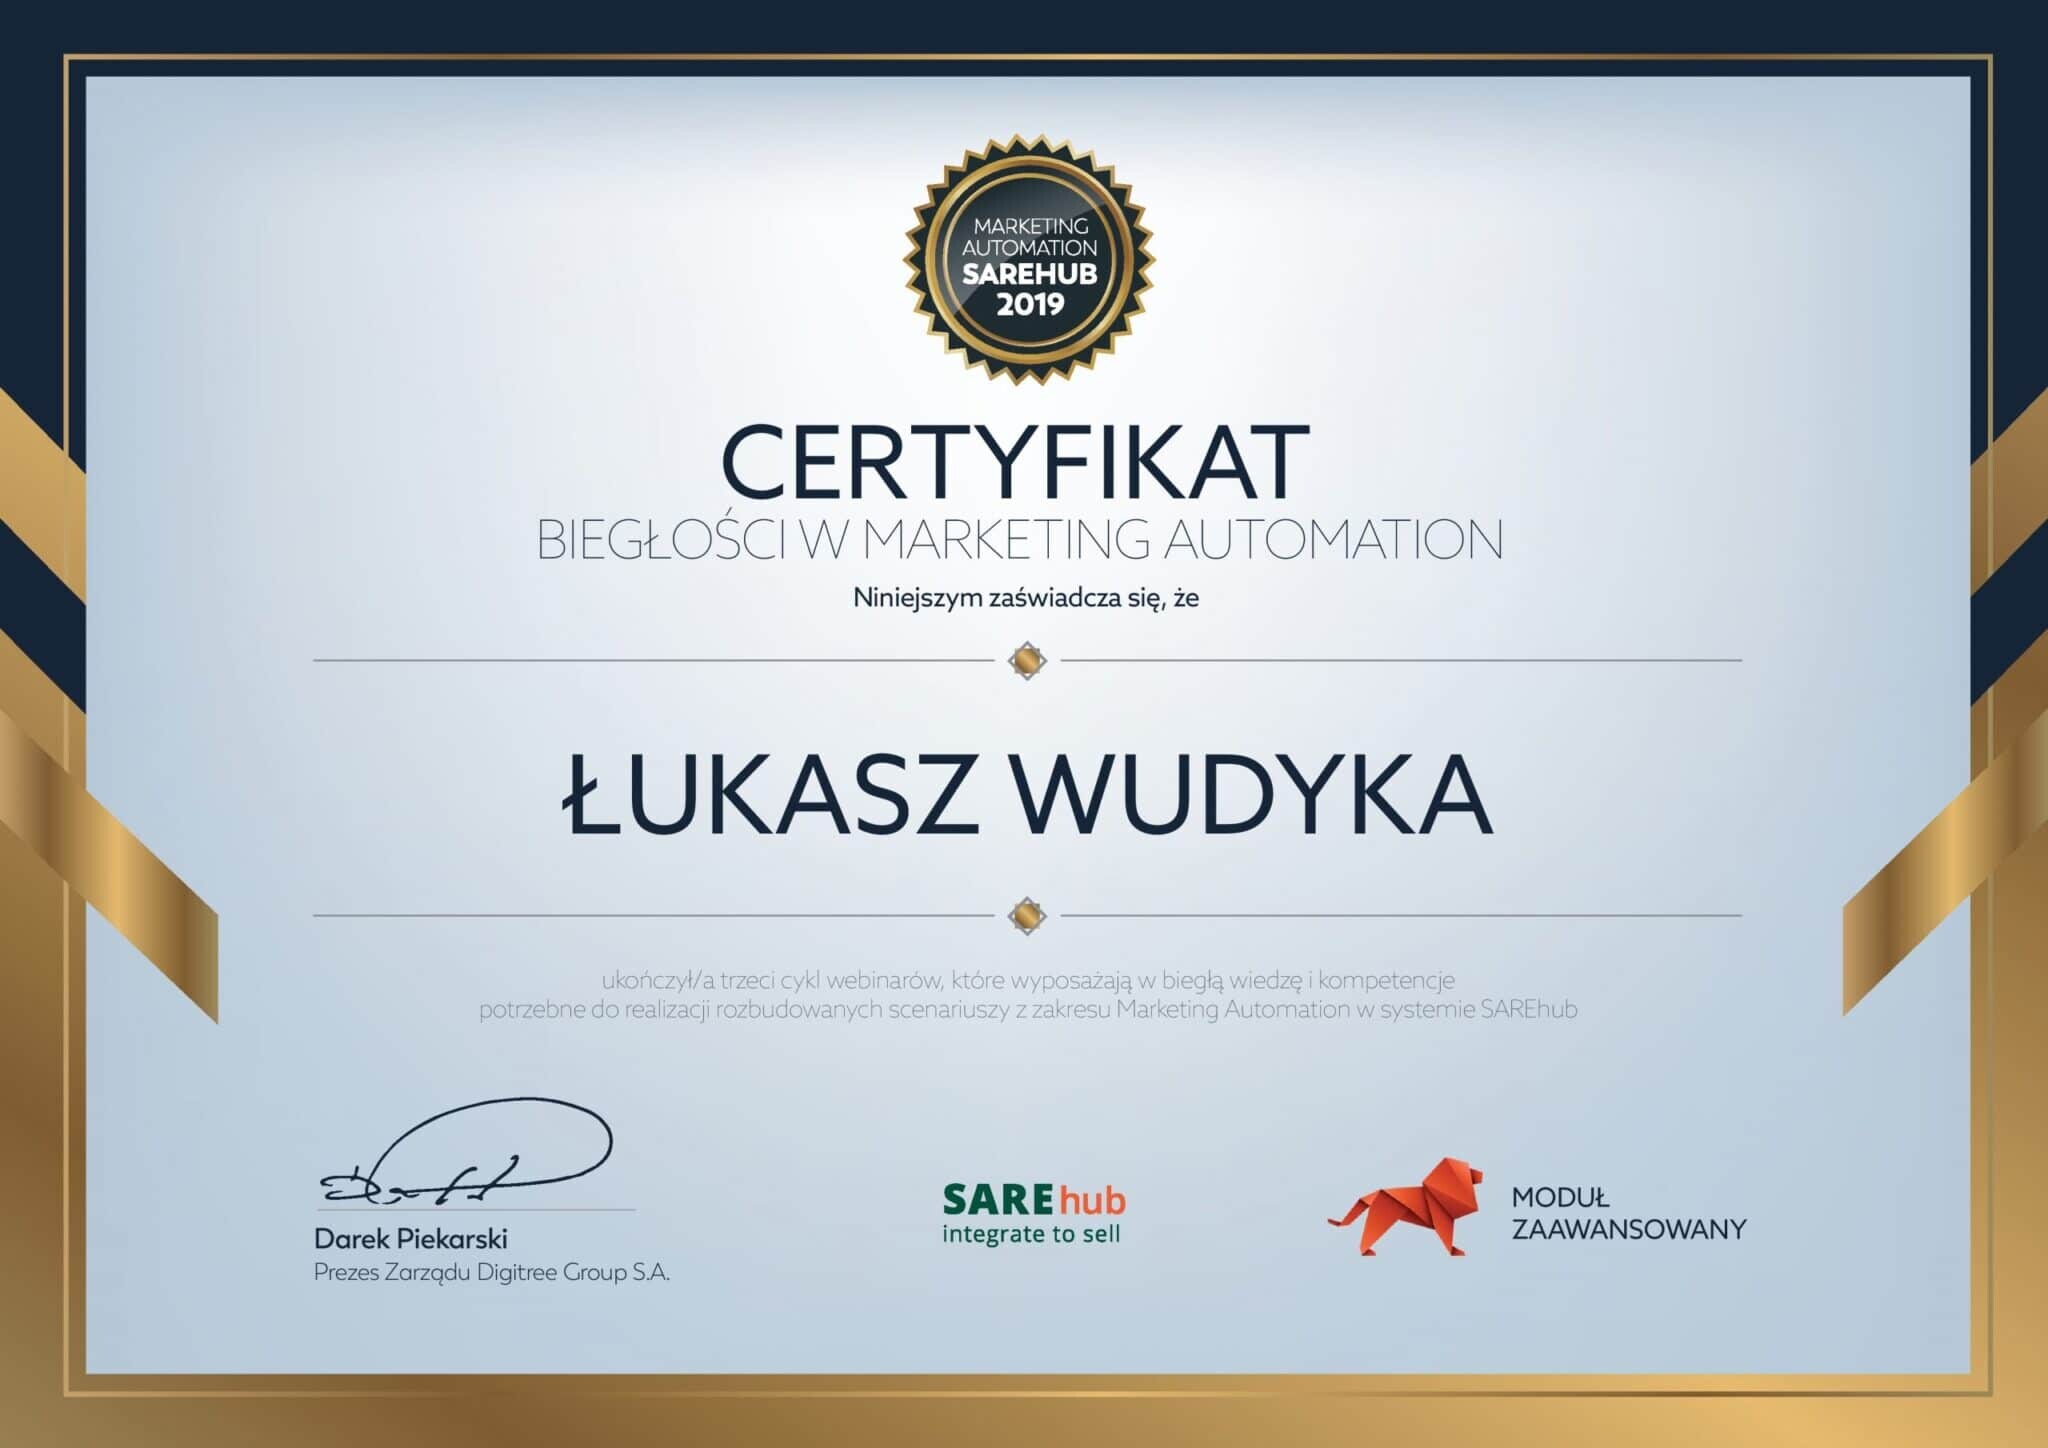 Łukasz Wudyka certyfikat SAREhub - BIEGŁOŚĆ W MARKETING AUTOMATION - MODUŁ ZAAWANSOWANY